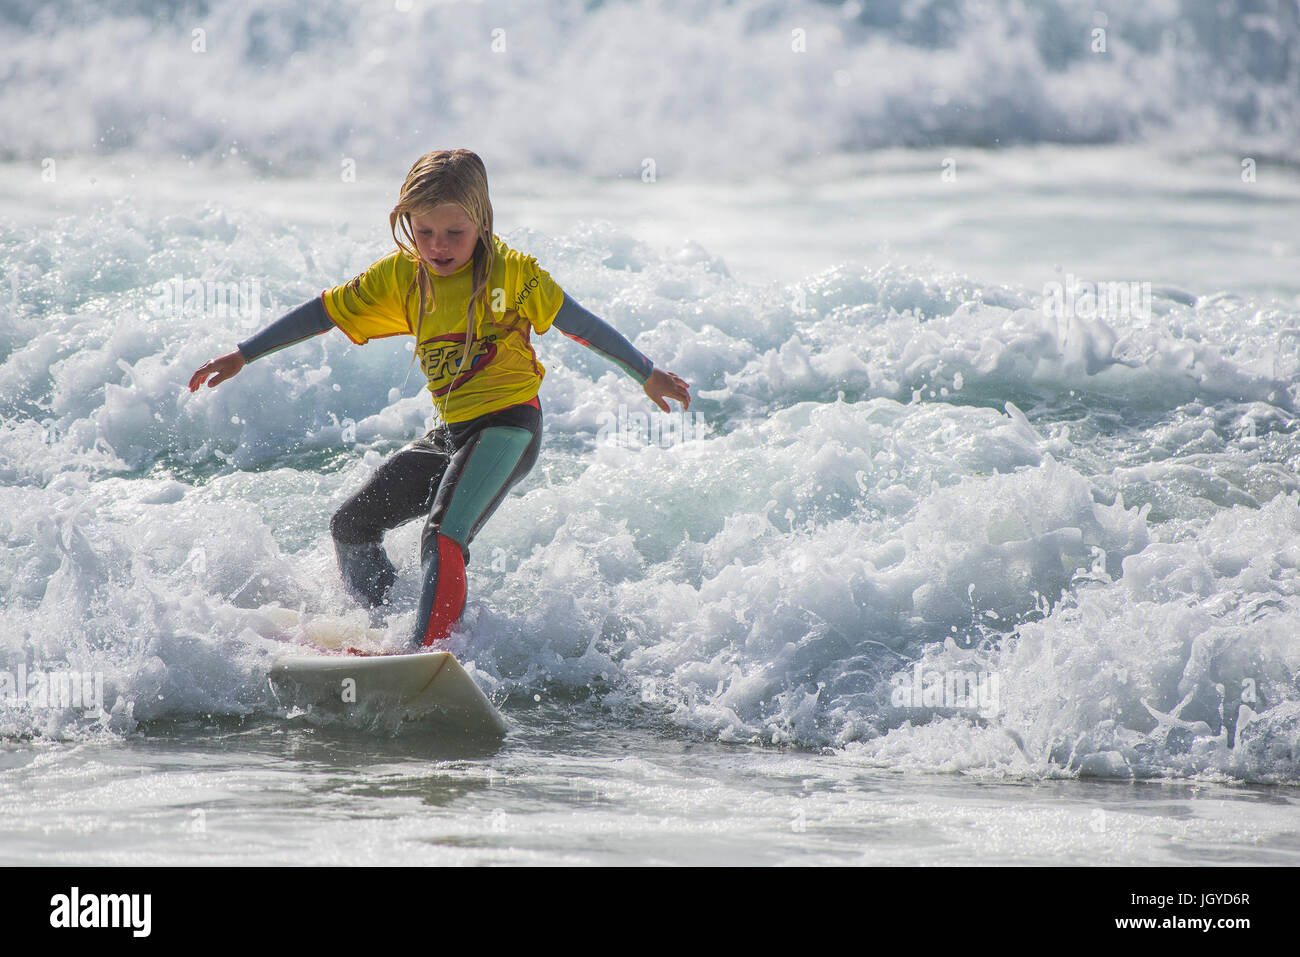 Surfen GROSSBRITANNIEN. Surfen kind Wave. Ein acht Jahre alter Surfer in den britischen Schulen Surf Meisterschaft konkurrieren. Stockfoto